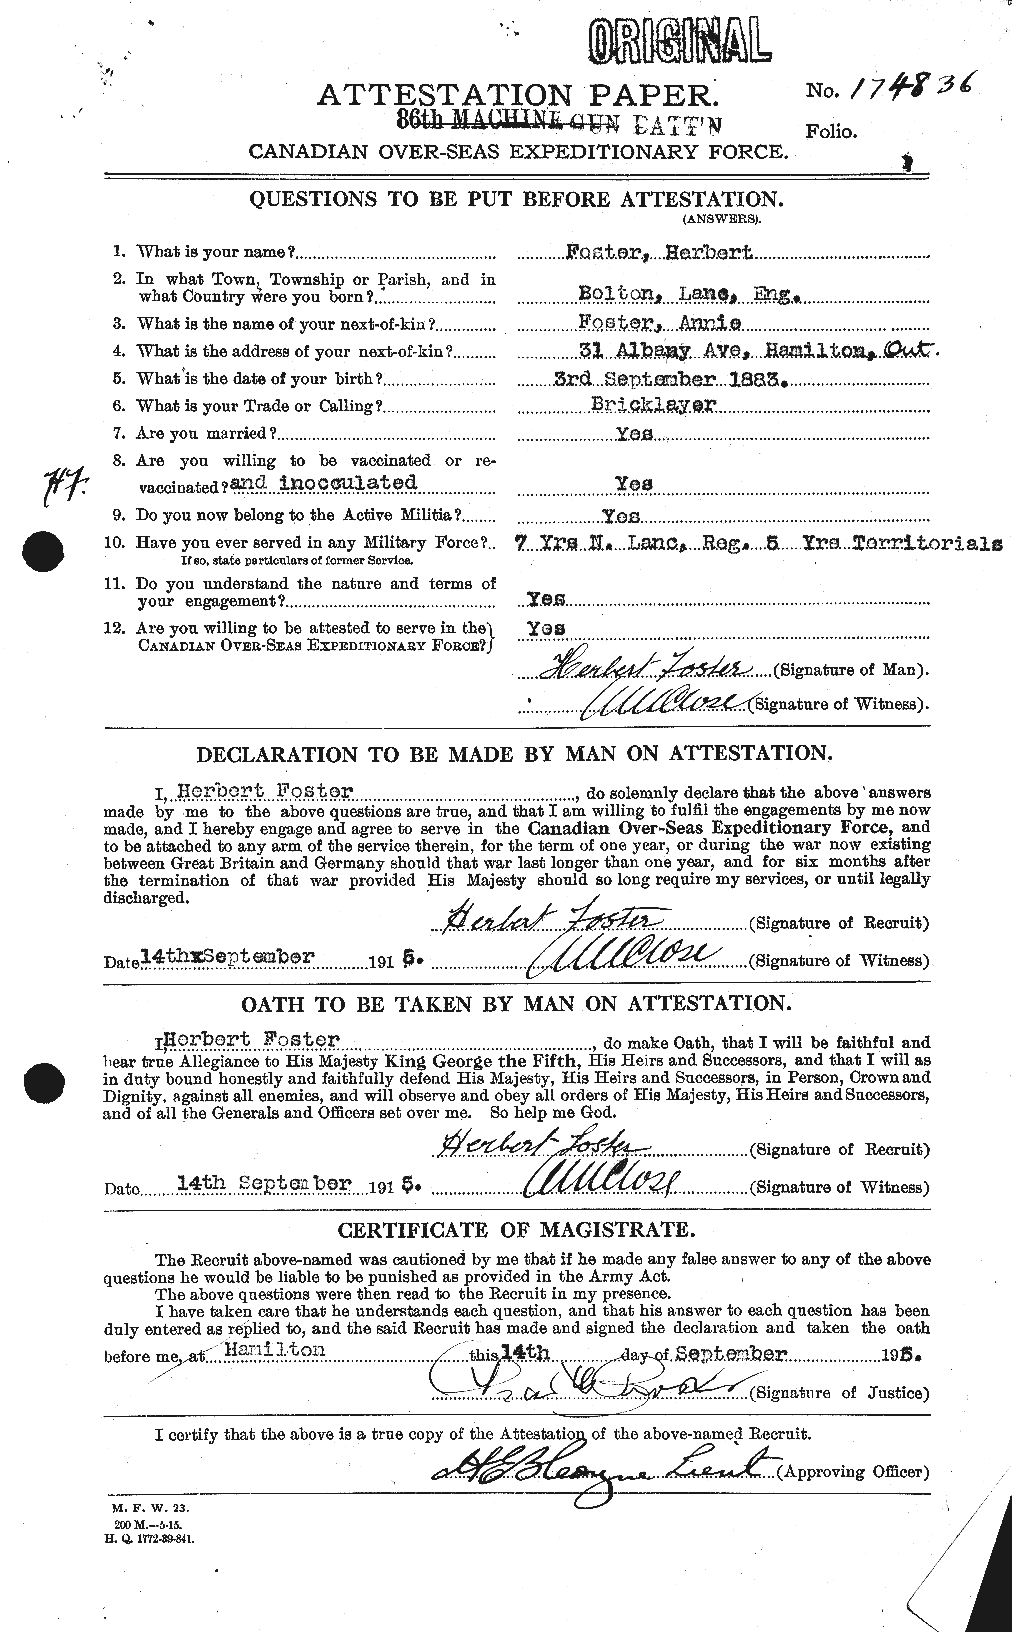 Dossiers du Personnel de la Première Guerre mondiale - CEC 333252a